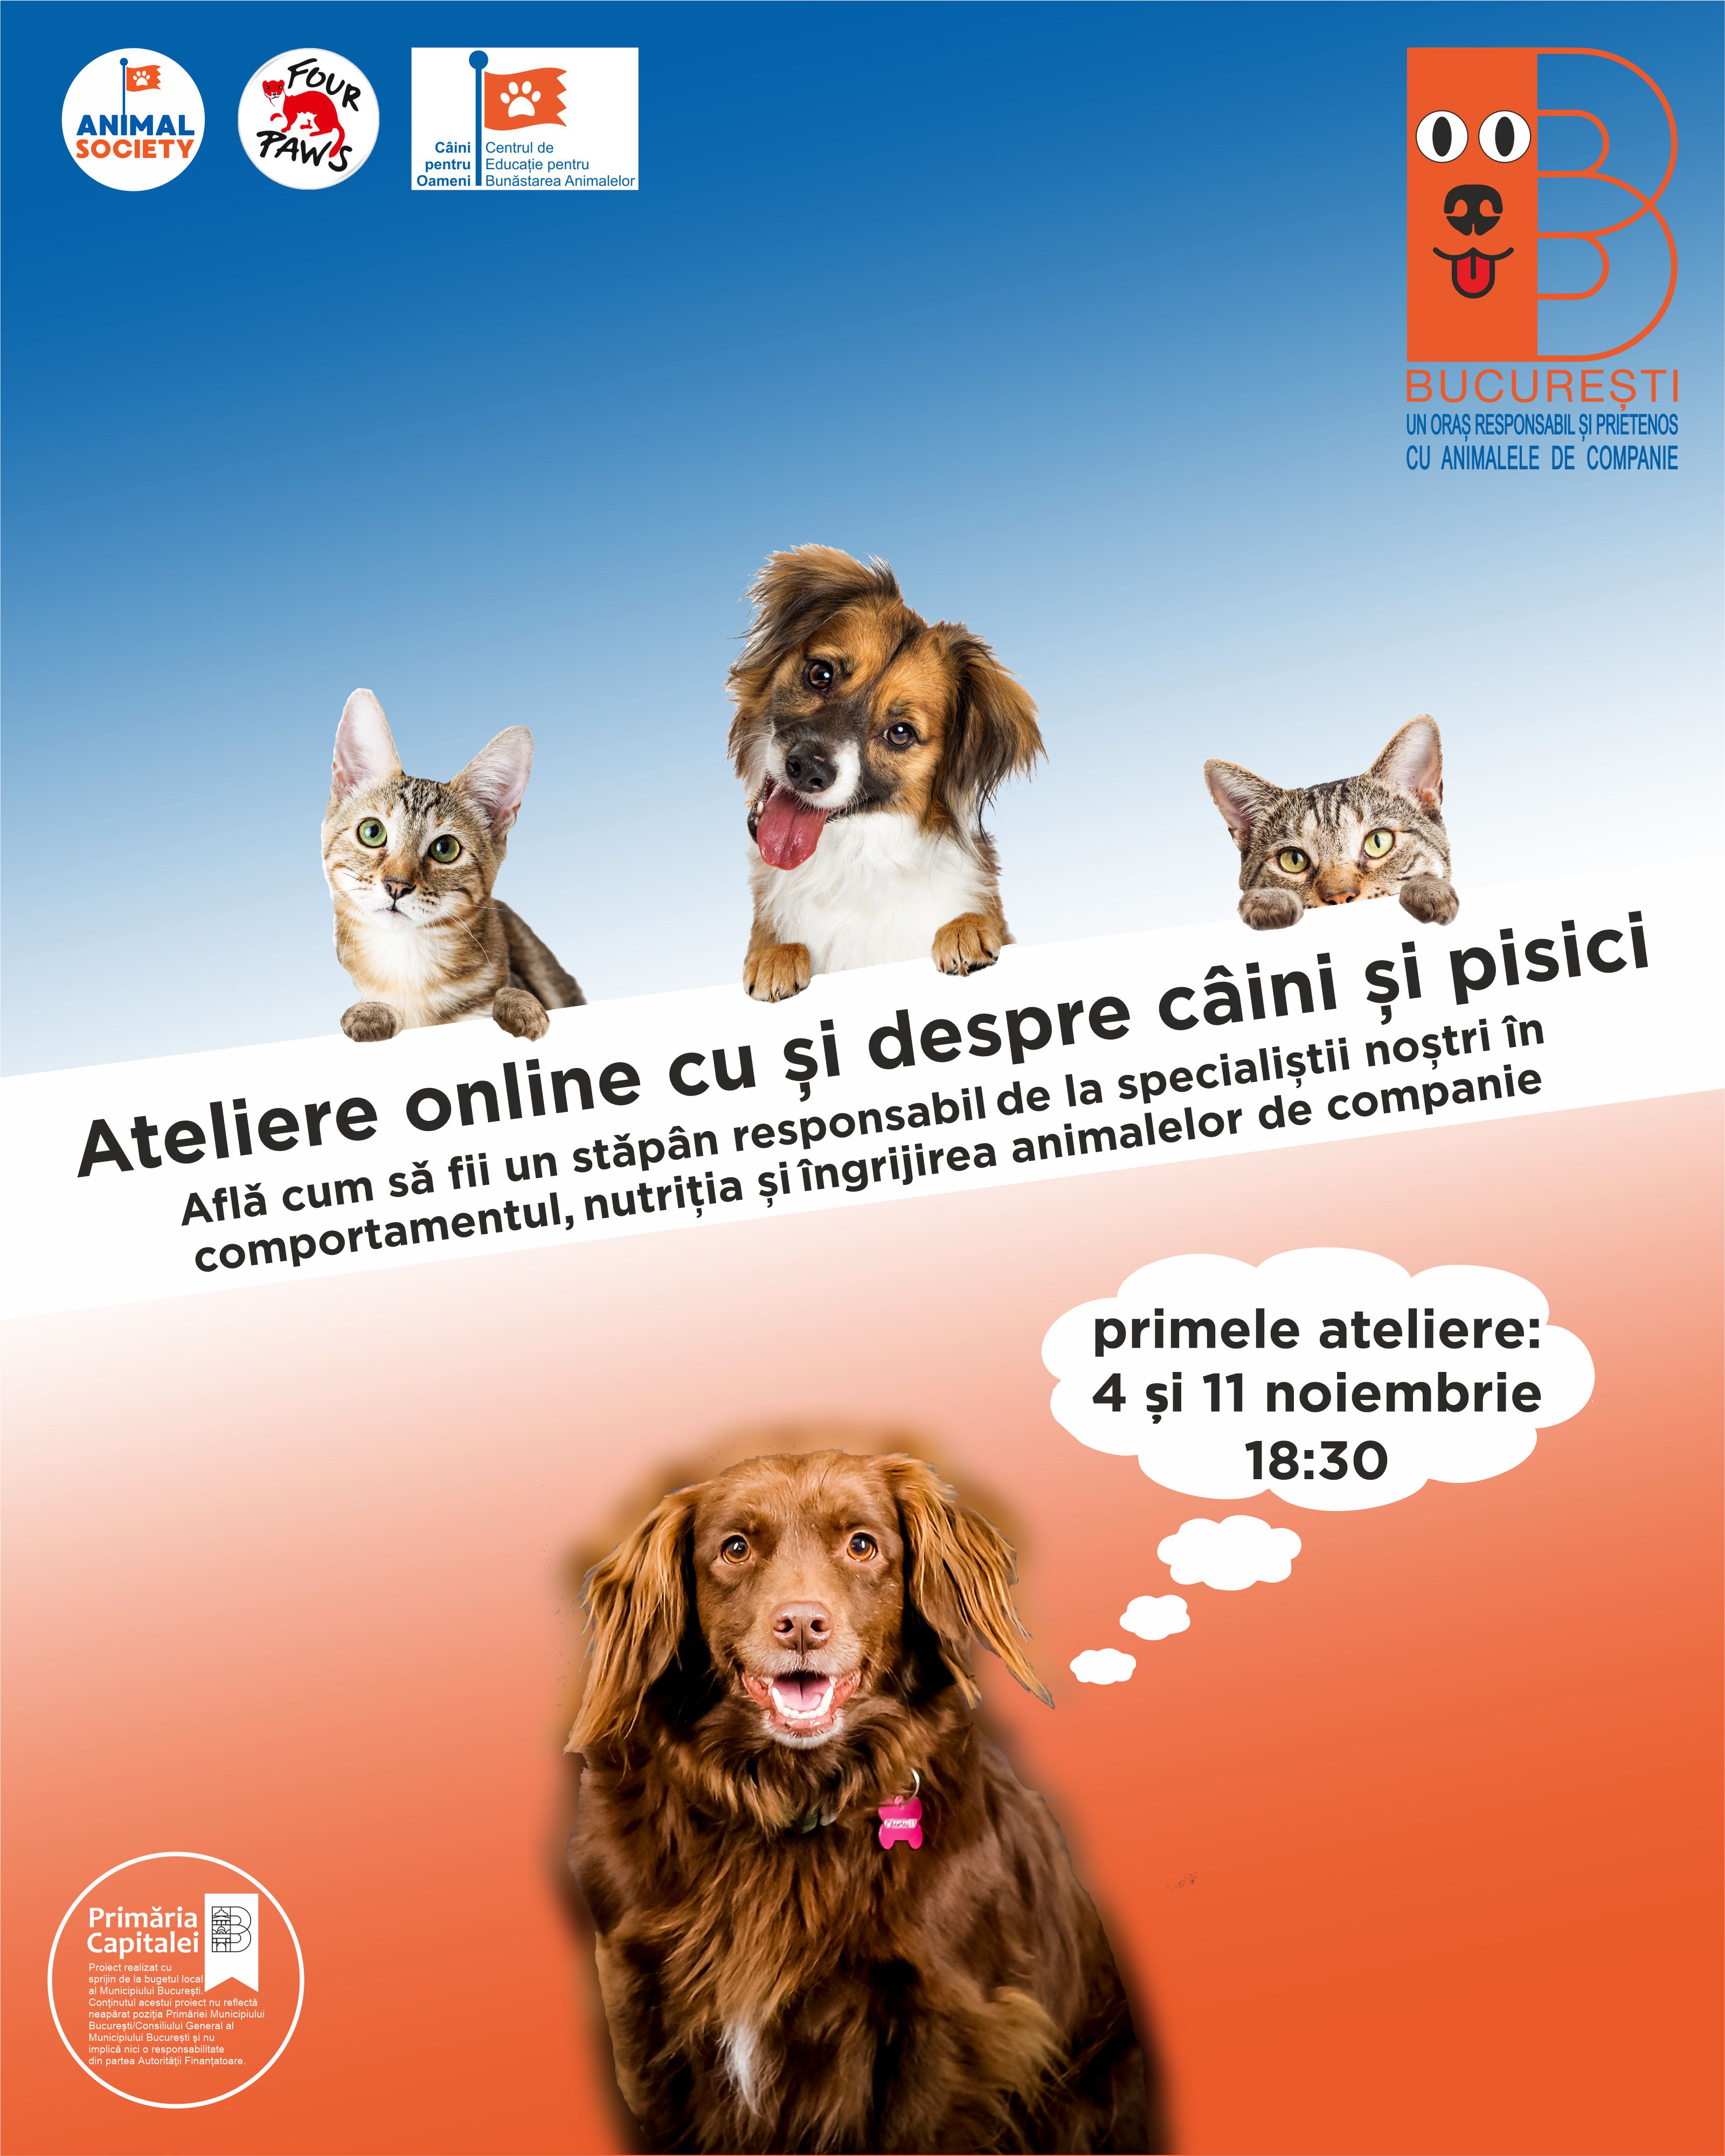 Animal Society va susține o serie de ateliere educative online, pentru un București mai responsail și prietenos cu animalele